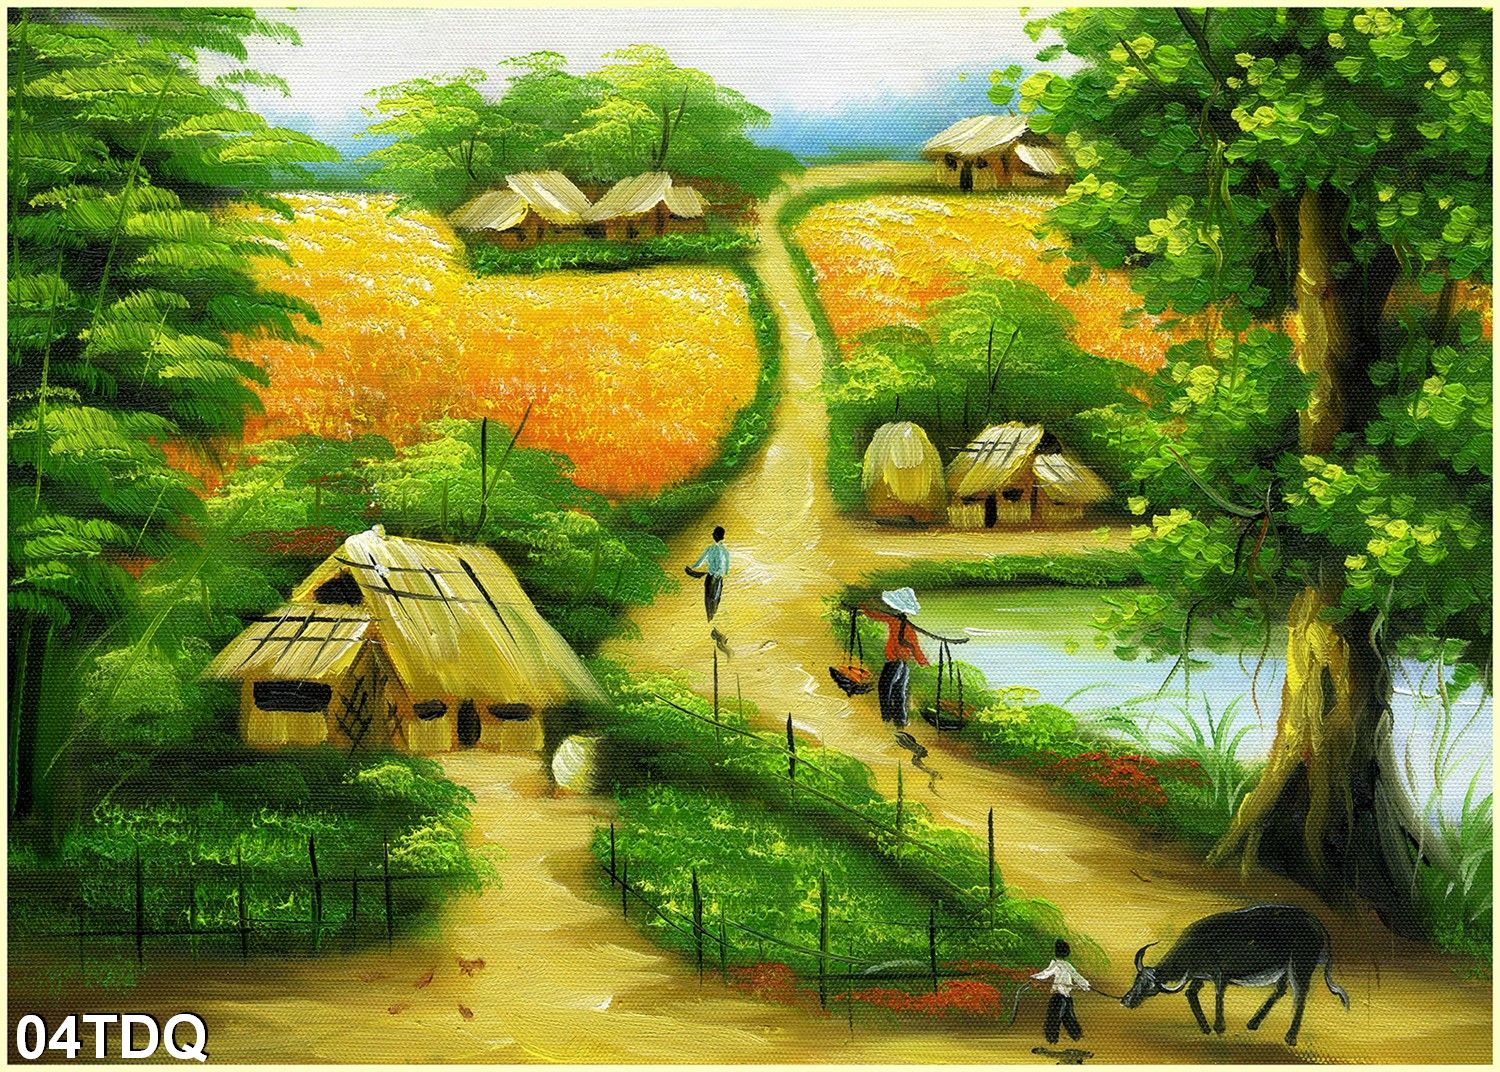 Tranh dán tường làng quê: Tranh Dán Tường Làng Quê sẽ biến không gian sống của bạn thành một phần của quê hương Việt Nam, nơi mà bạn sẽ cảm nhận được những giá trị tinh thần và truyền thống của đất nước. Bức tranh sẽ mang đến cho bạn sự tươi vui và hạnh phúc bên gia đình và những người thân yêu.